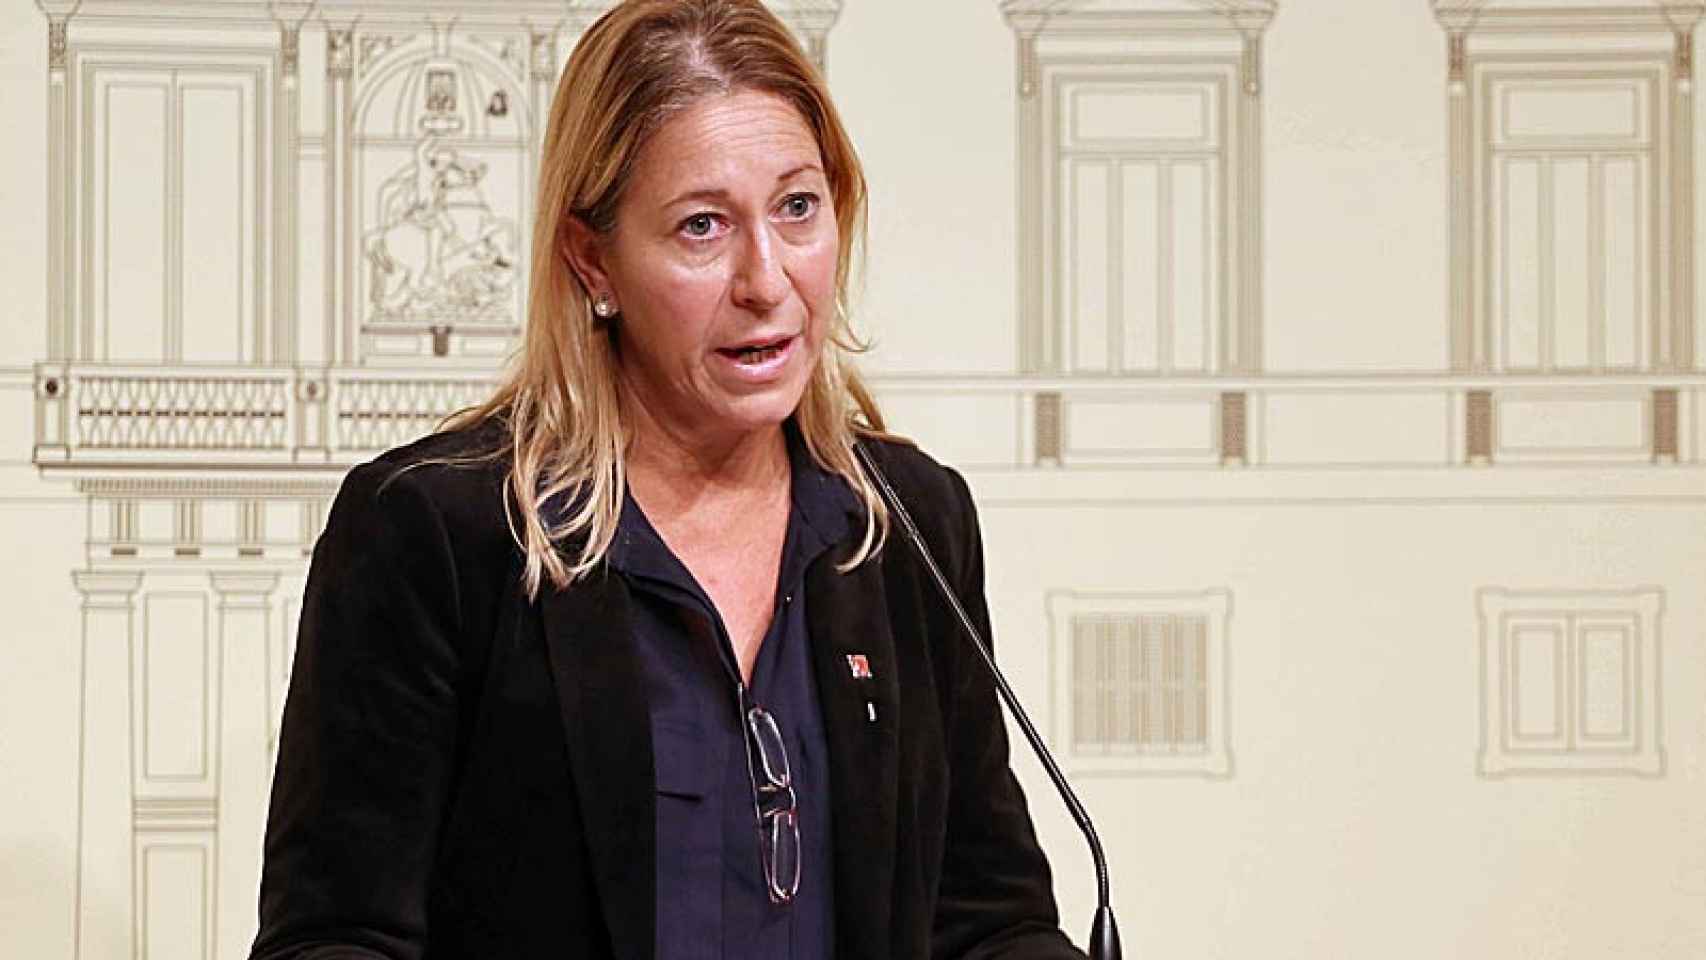 La vicepresidenta de la Generalitat, Neus Munté